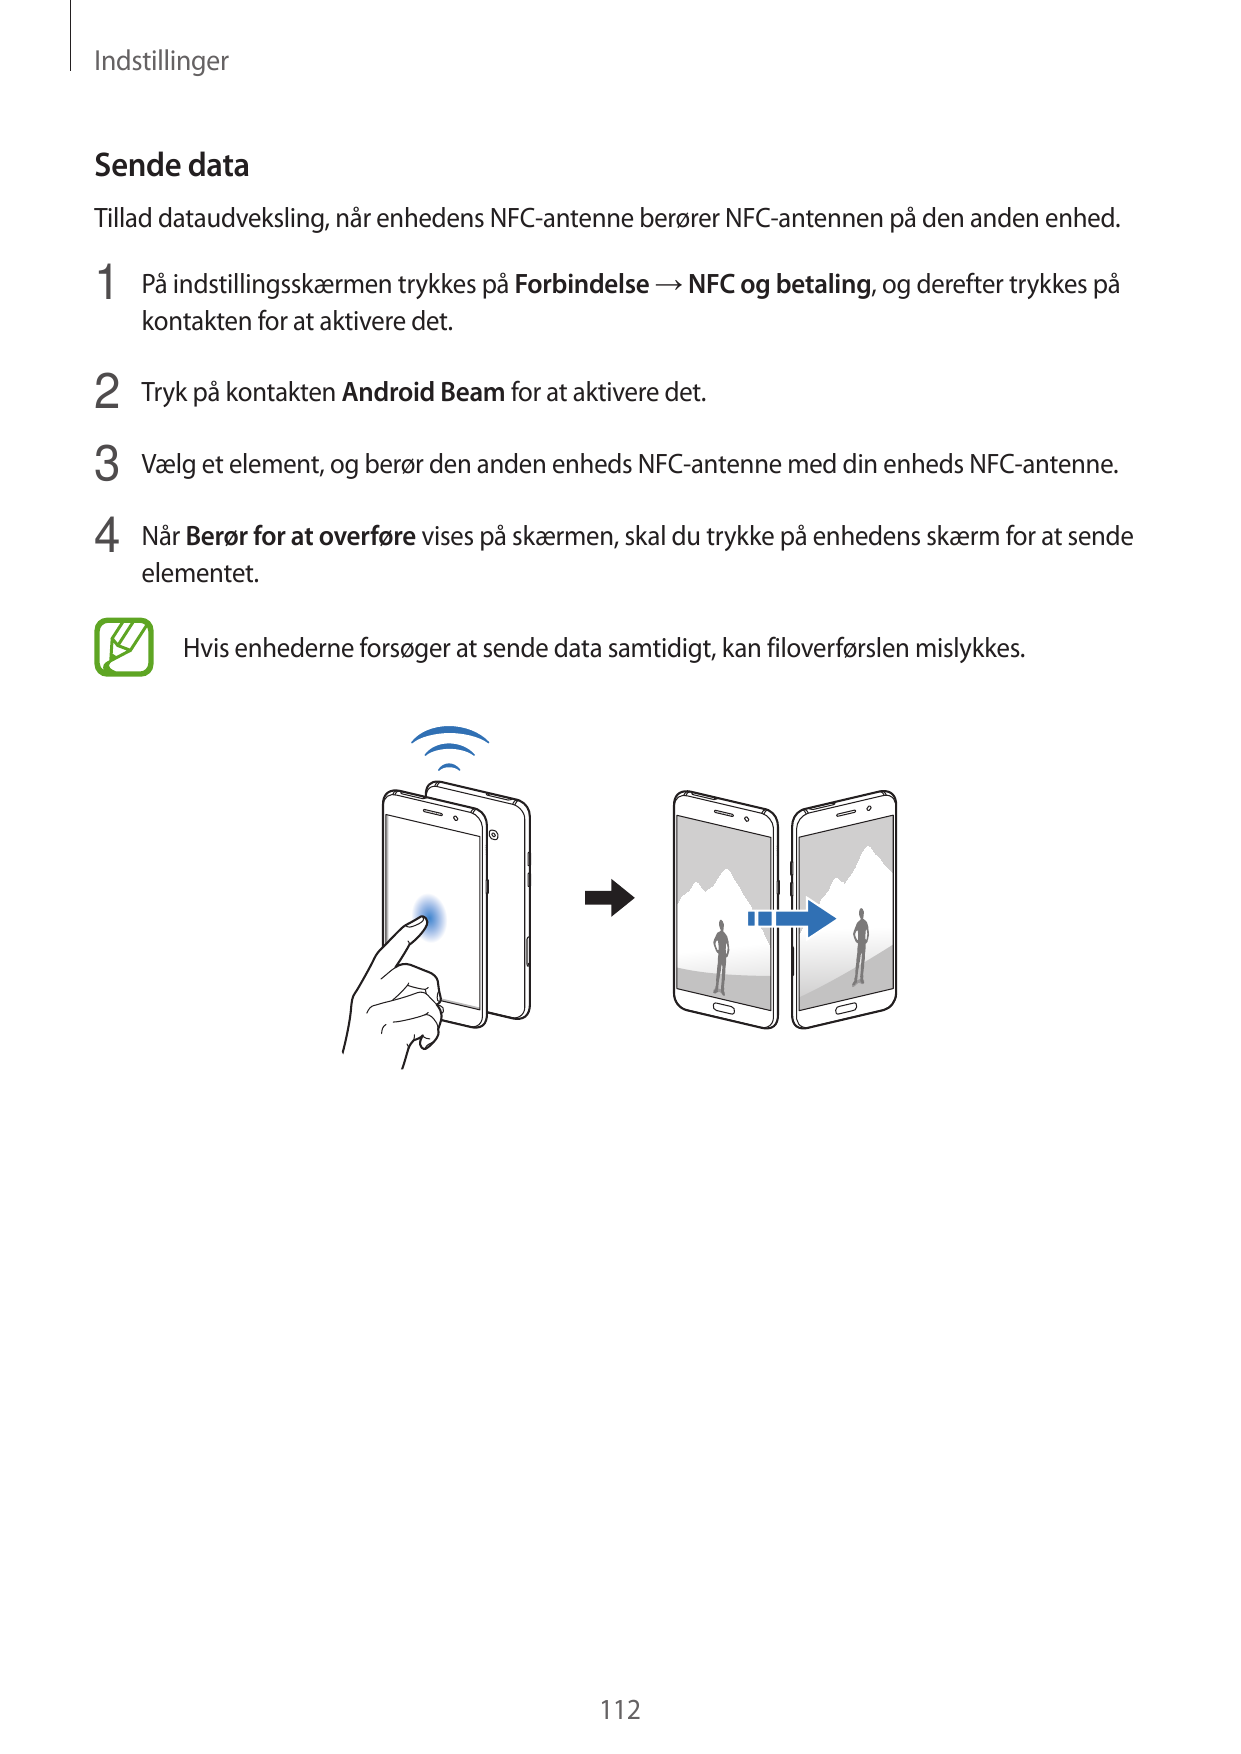 IndstillingerSende dataTillad dataudveksling, når enhedens NFC-antenne berører NFC-antennen på den anden enhed.1 På indstillings